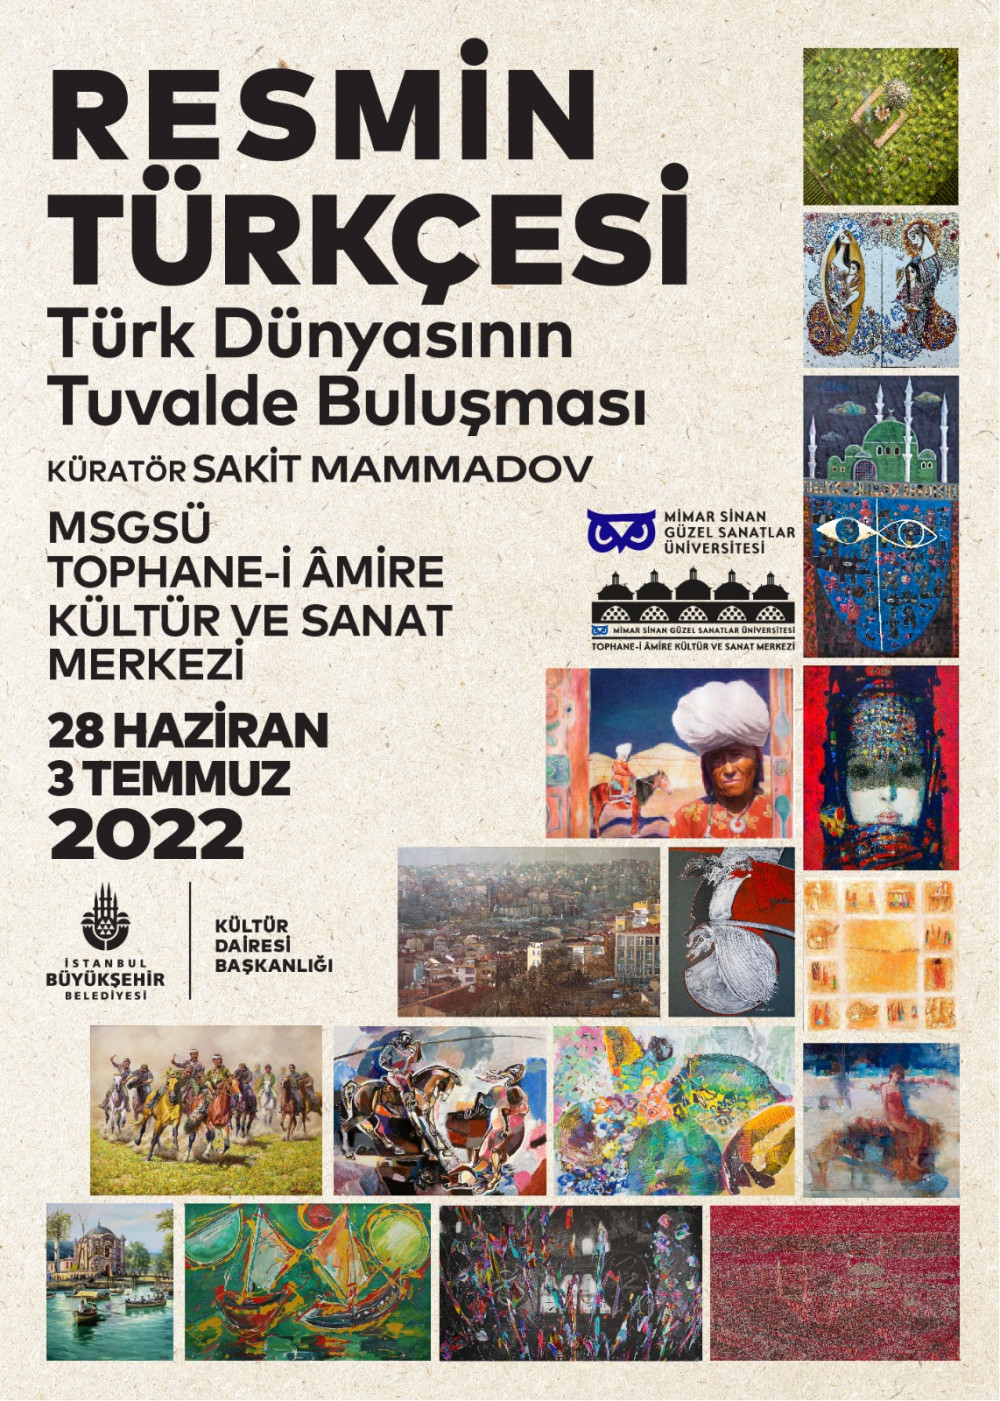 Resmin Türkçesi,  Tophane-i Amirede sergileniyor